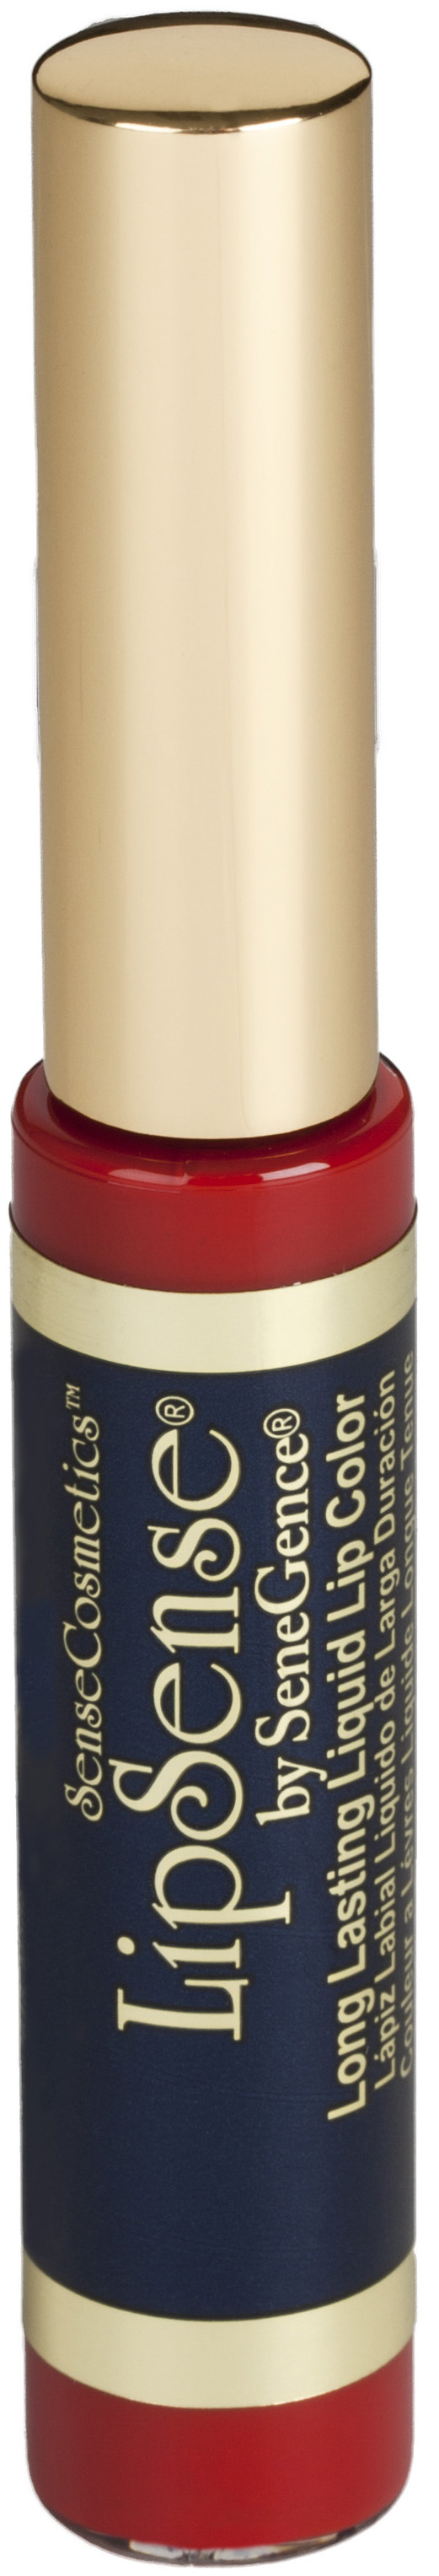 LipSense Liquid Lip Color (Honey Rose) - Item  1230